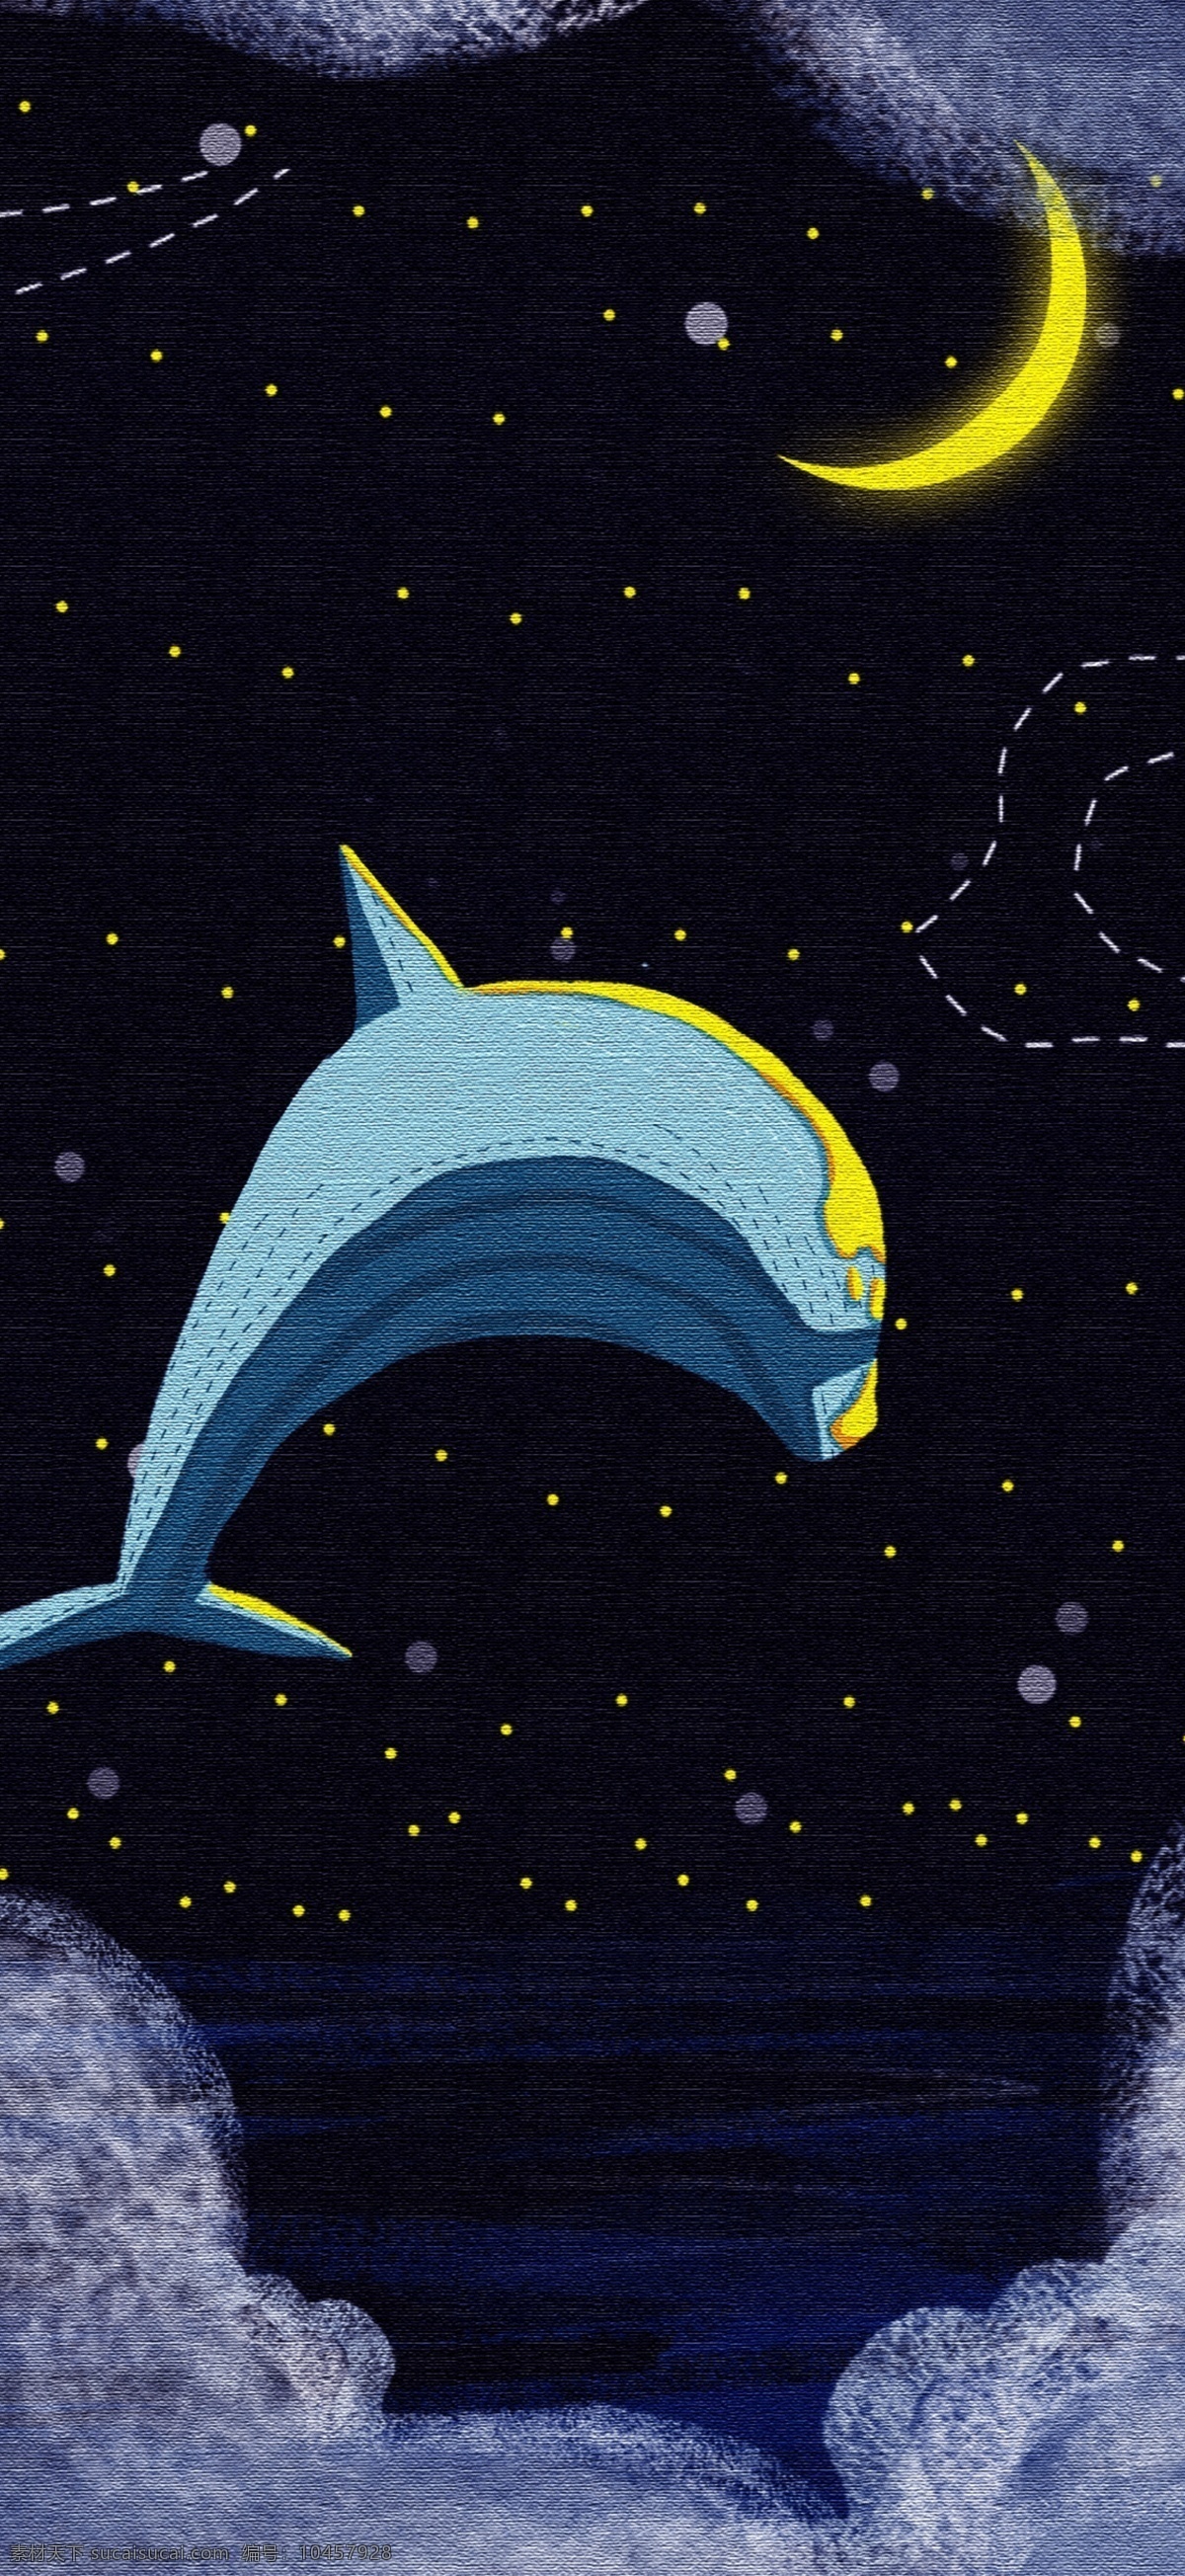 深海 鲸鱼 治愈 系 插画 星空 月亮 星星 壁纸 深海鲸鱼 治愈系 鲸鱼治 愈系插画 桌面